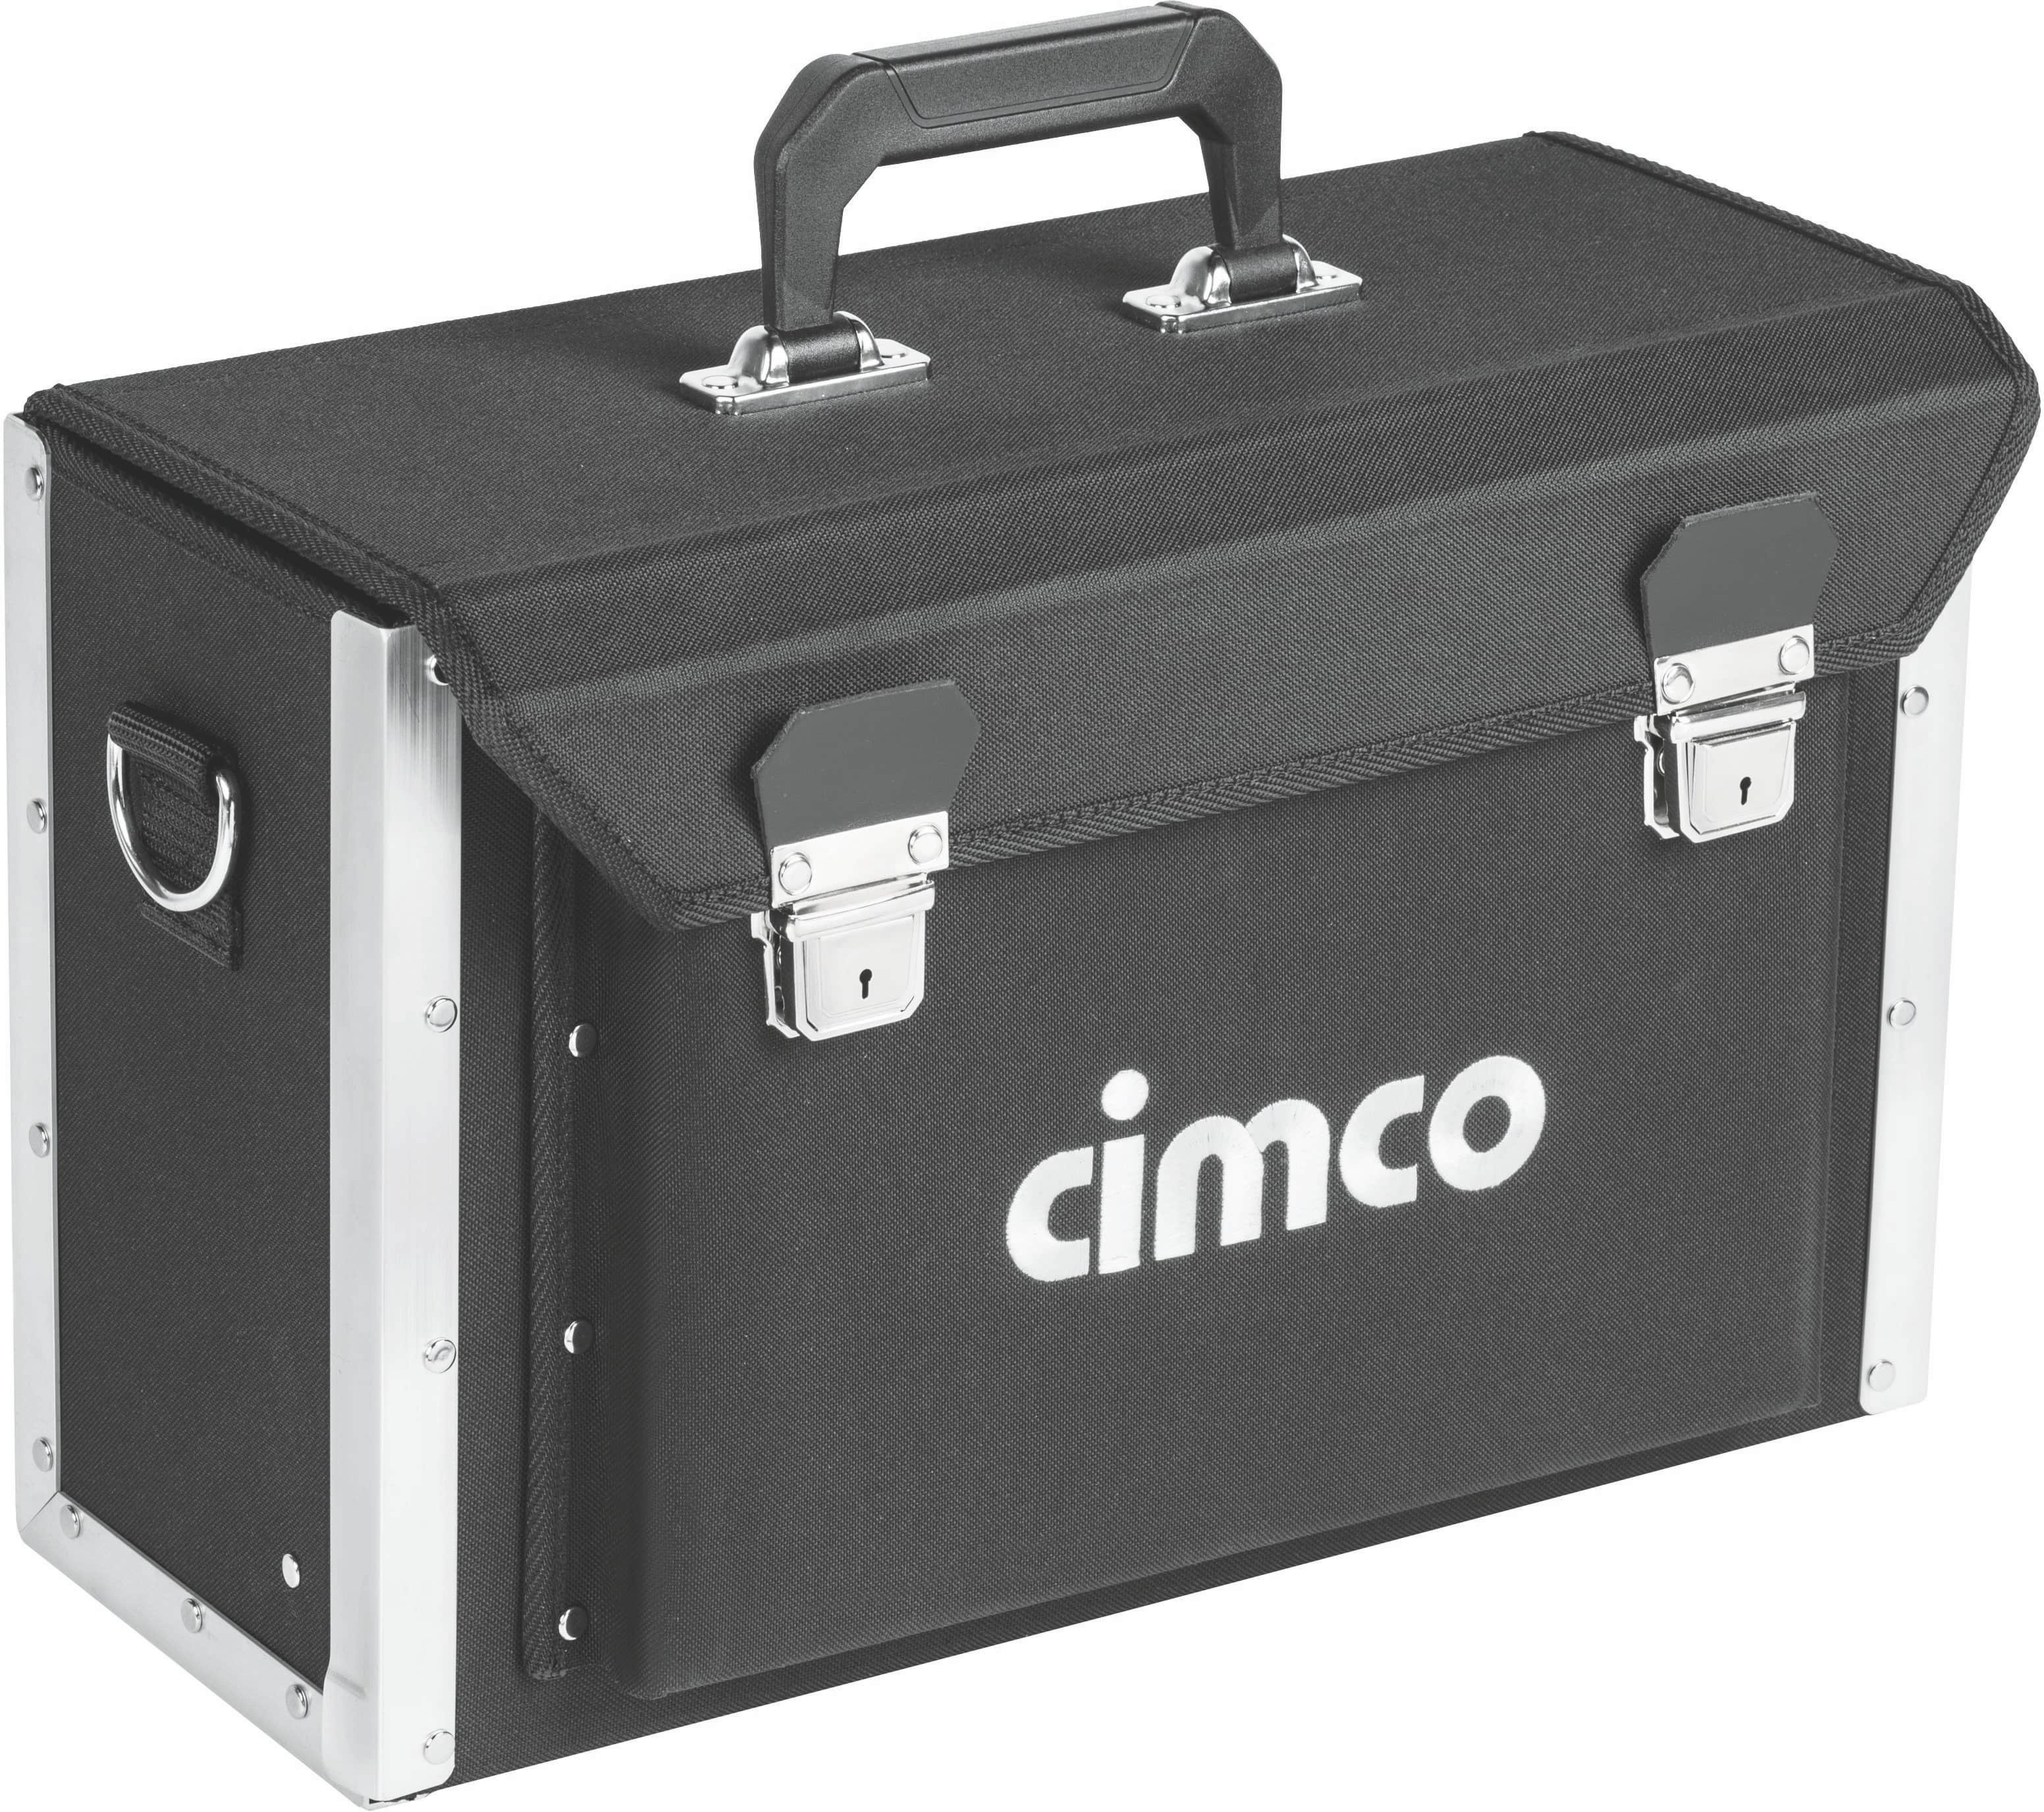 Cimco 17 0460 Werkzeugtasche Industrial mit zahlreichen Werkzeugaufnahmen